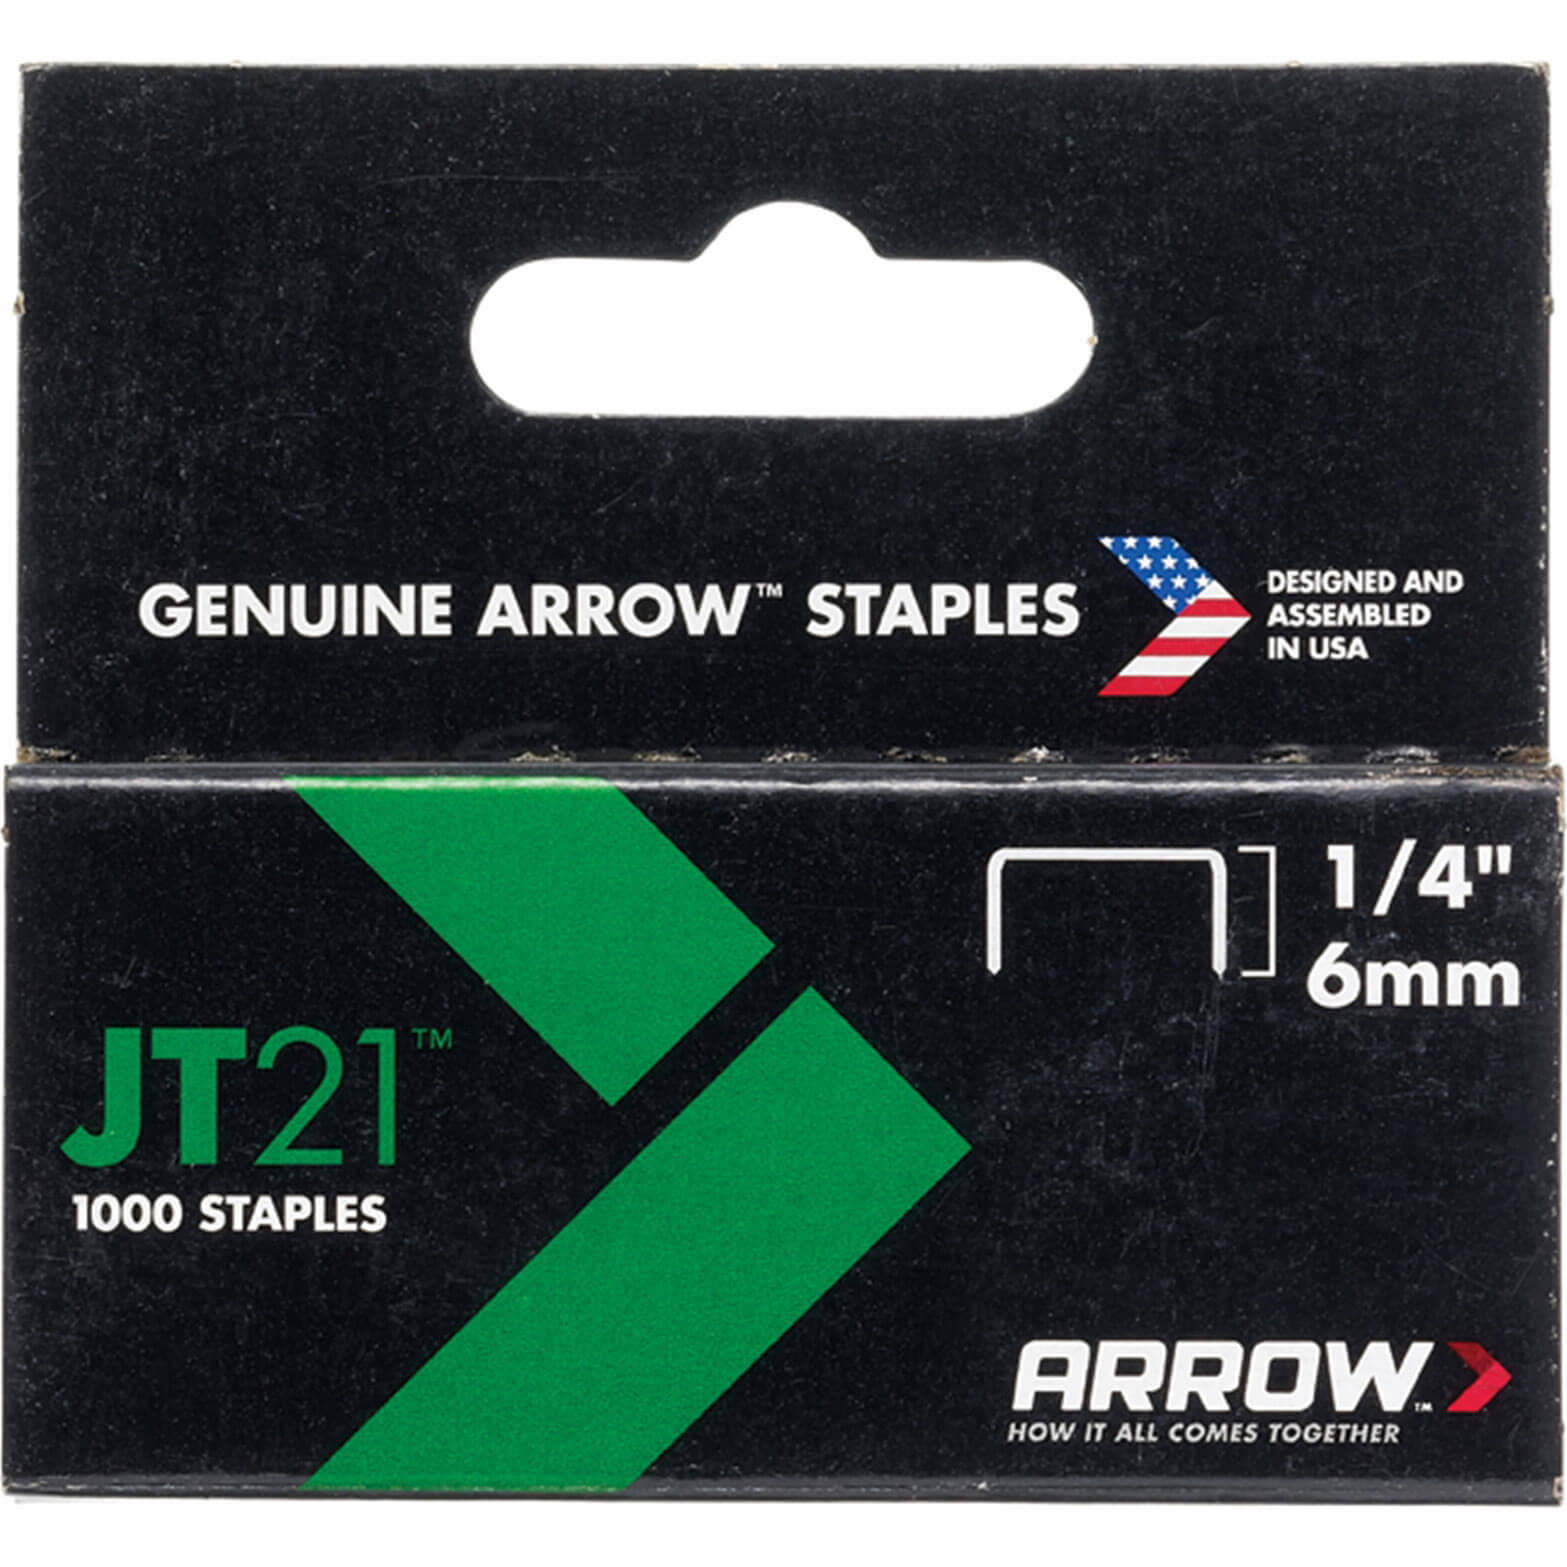 Image of Arrow Staples for JT21 / T27 Staple Guns 6mm Pack of 1000